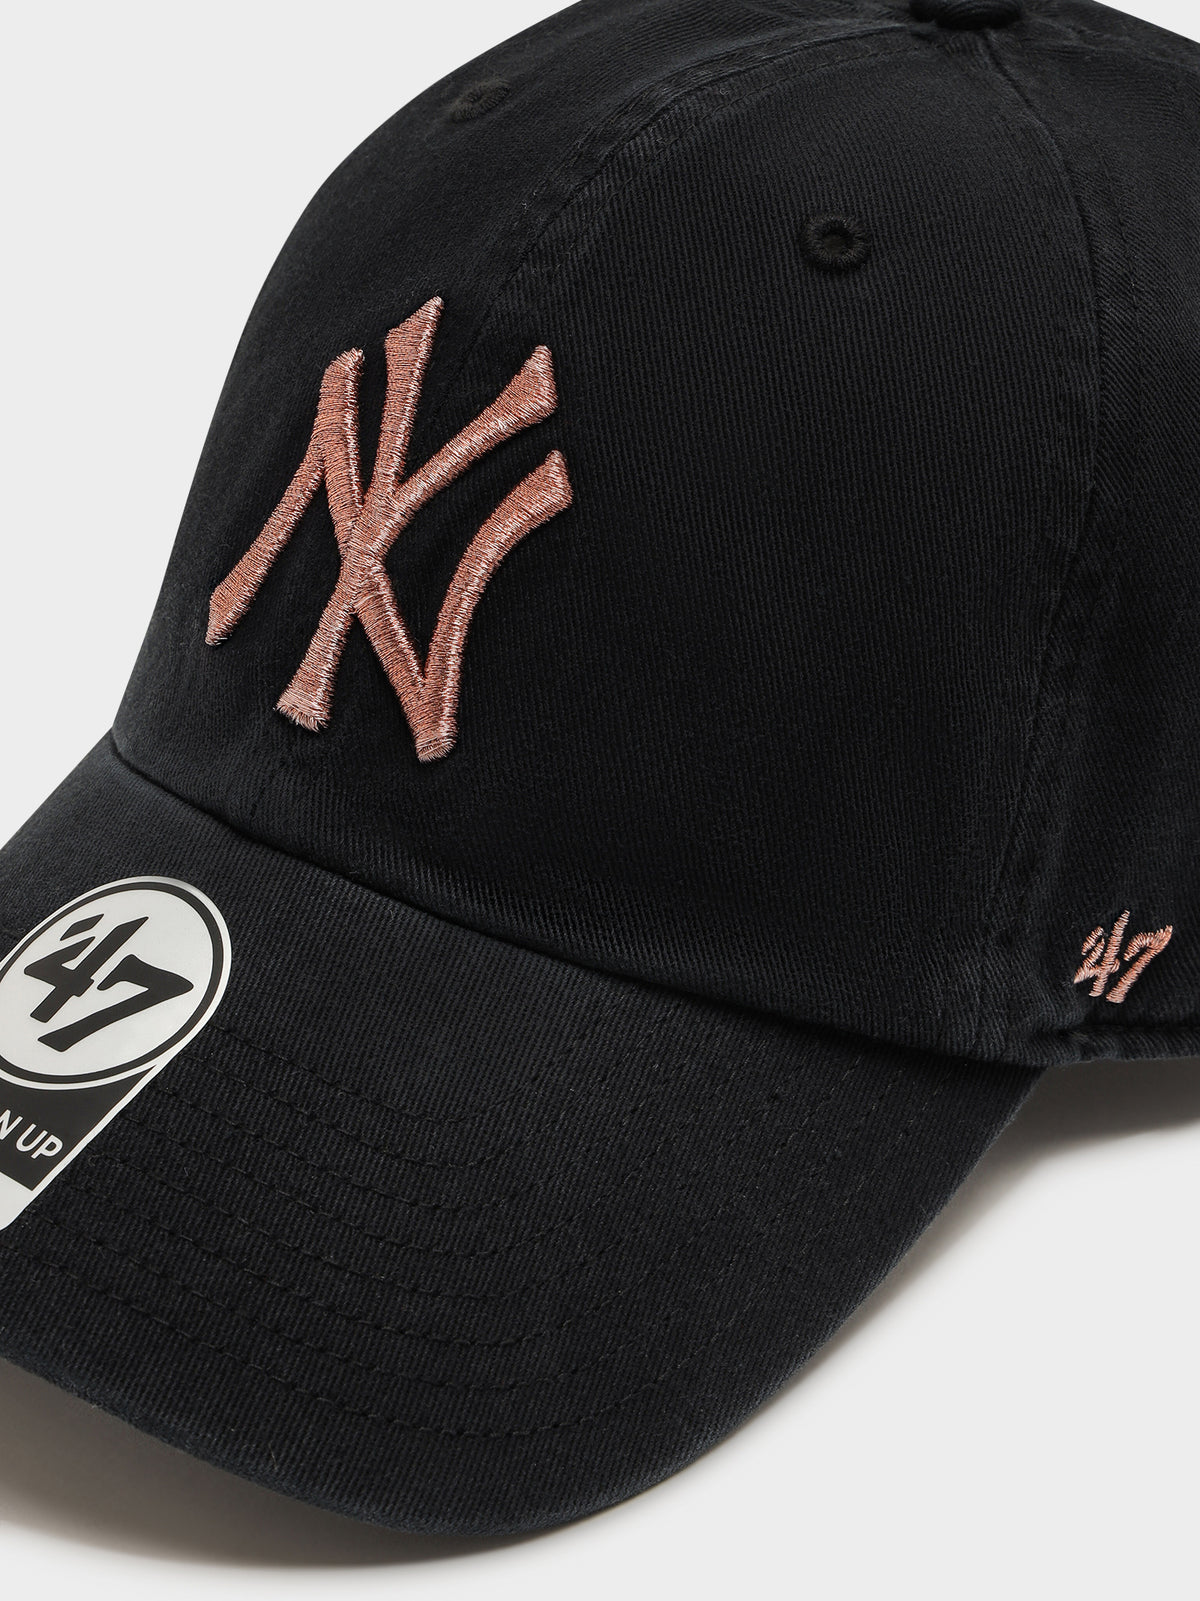 NY Yankees Metallic Badge Cap in Black Rose